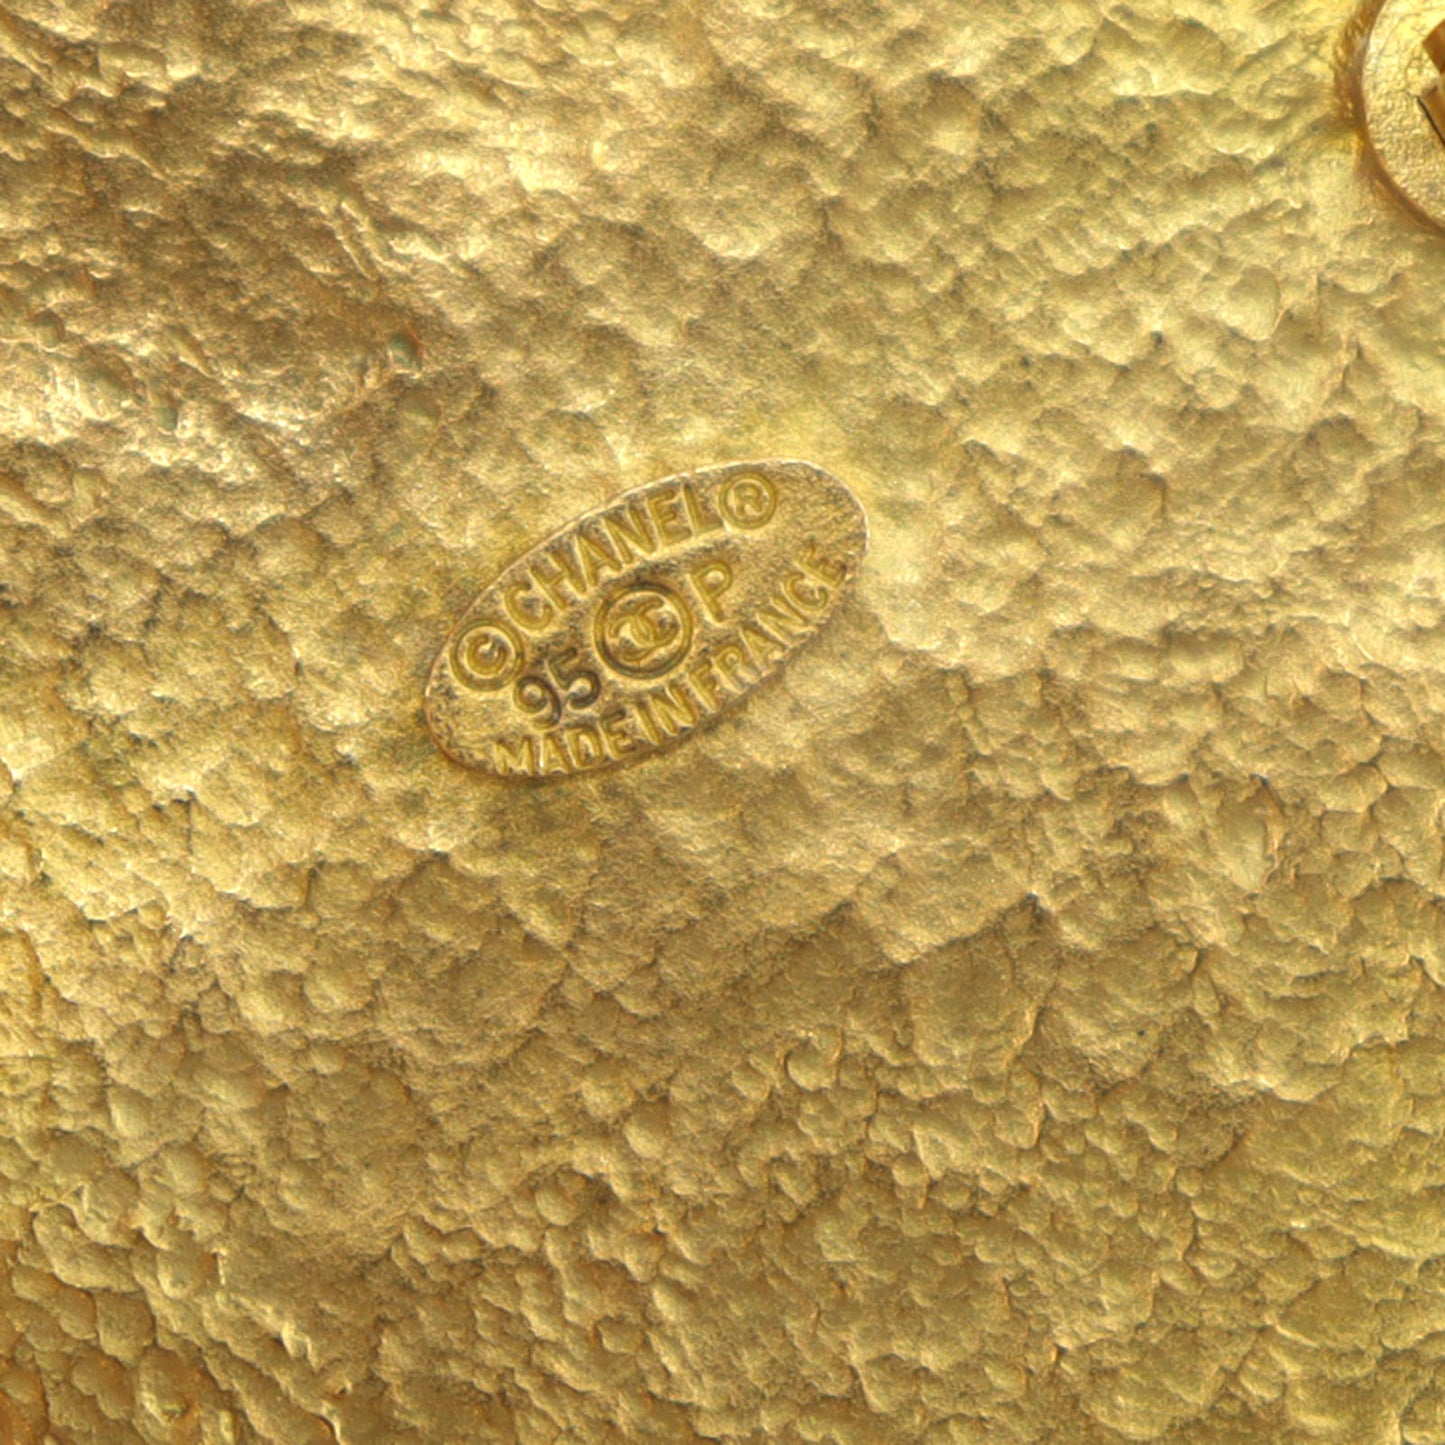 CHANEL CC Logos Circle Pin Brooch Gold Plated 95P #CD658